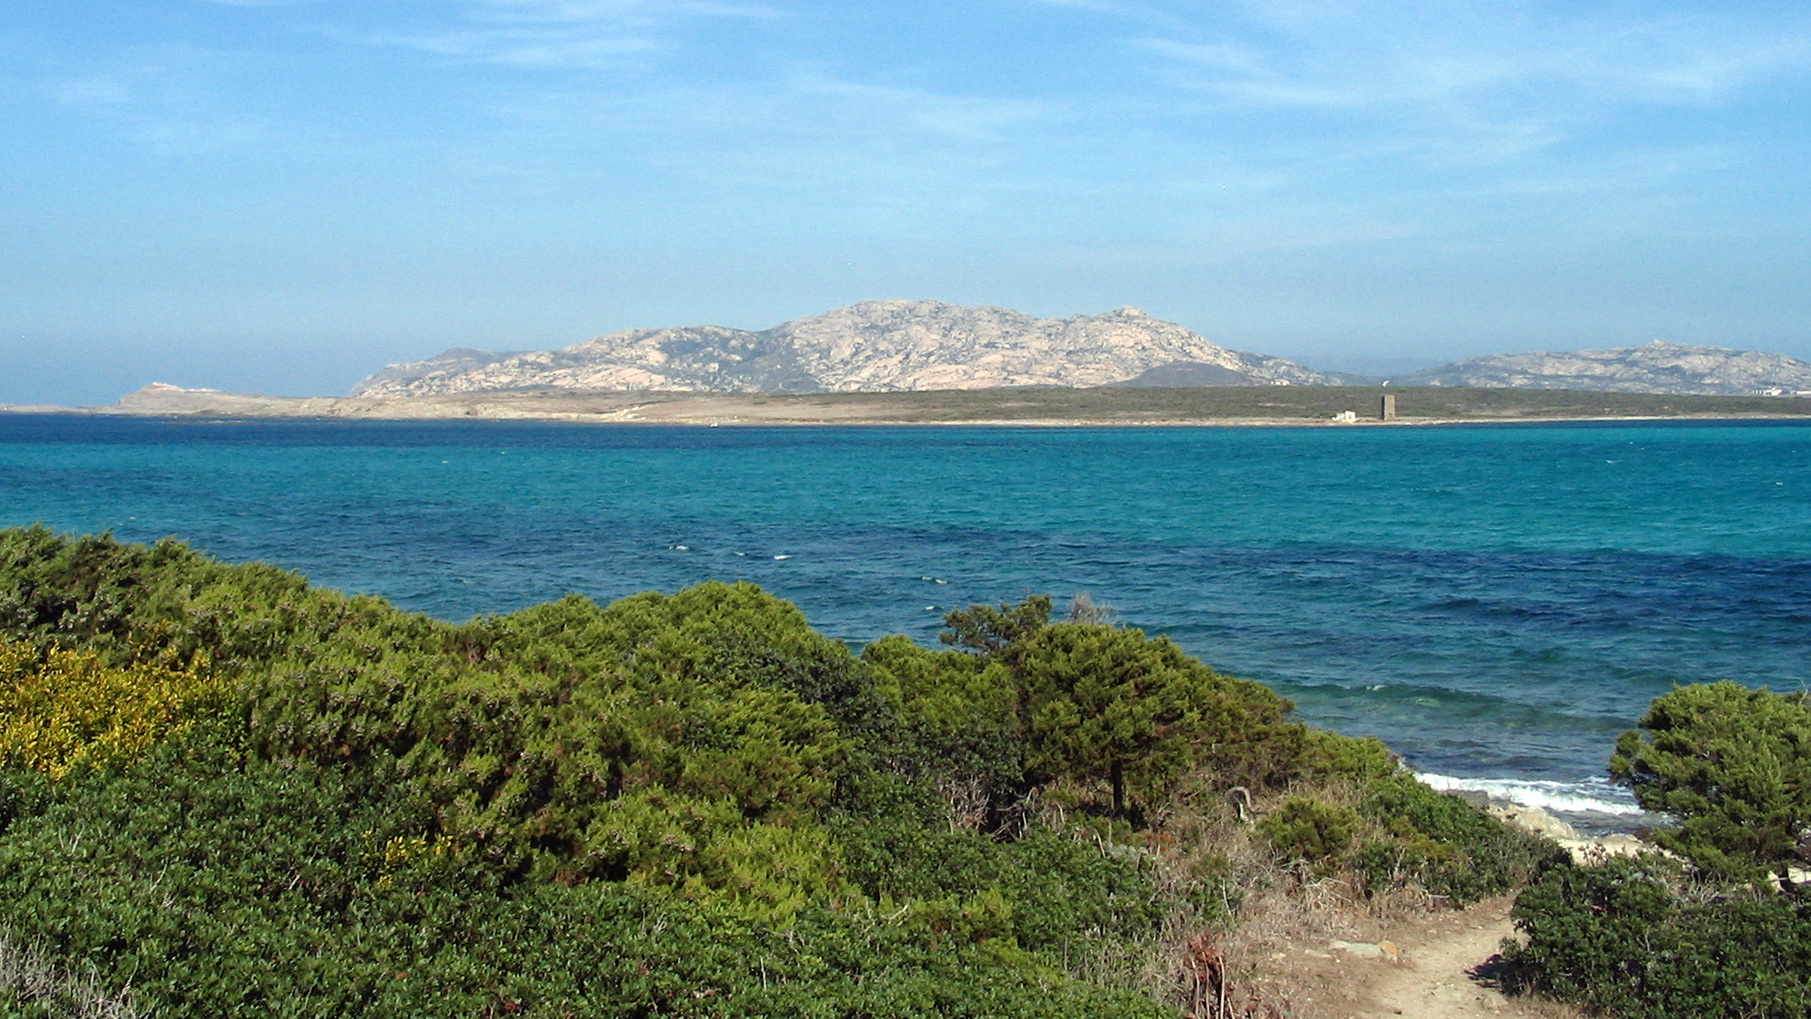 Nord Sardegna. Navigavano in zona a tutela integrale: denunciati in 8